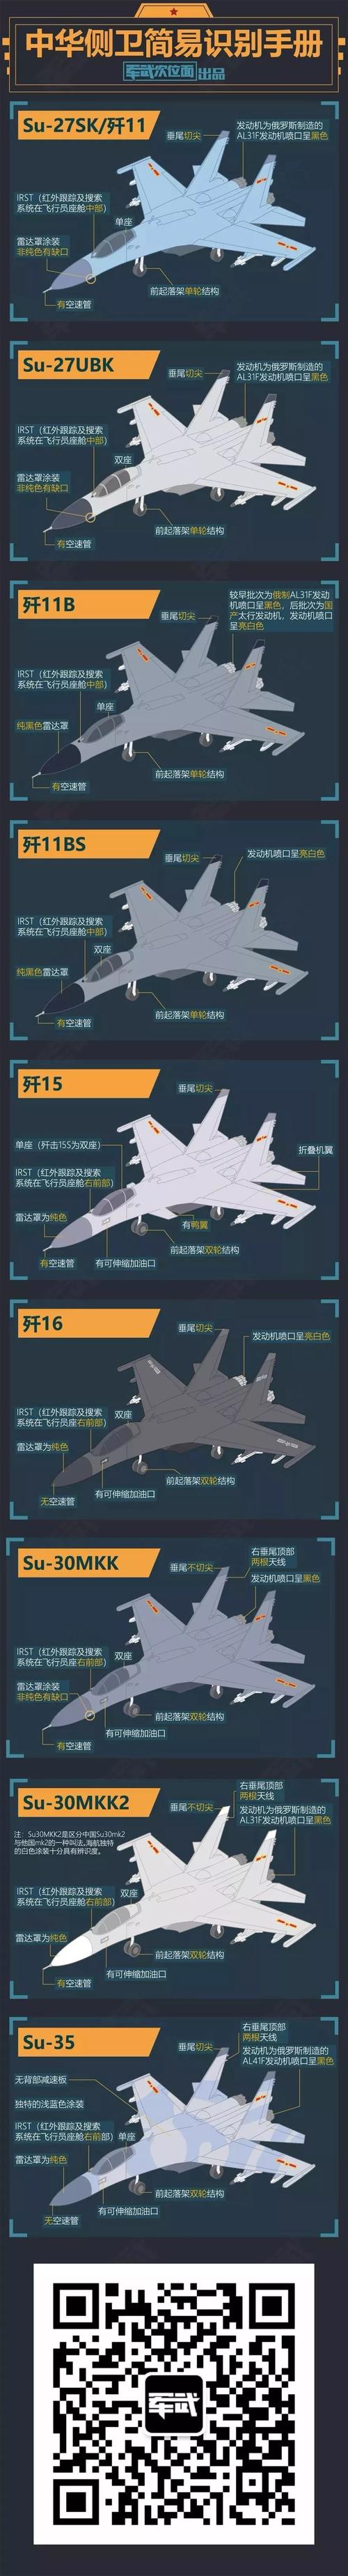 中国苏-27系战斗机如何区分?歼-11a/b,歼-15,苏30又有什么区别?